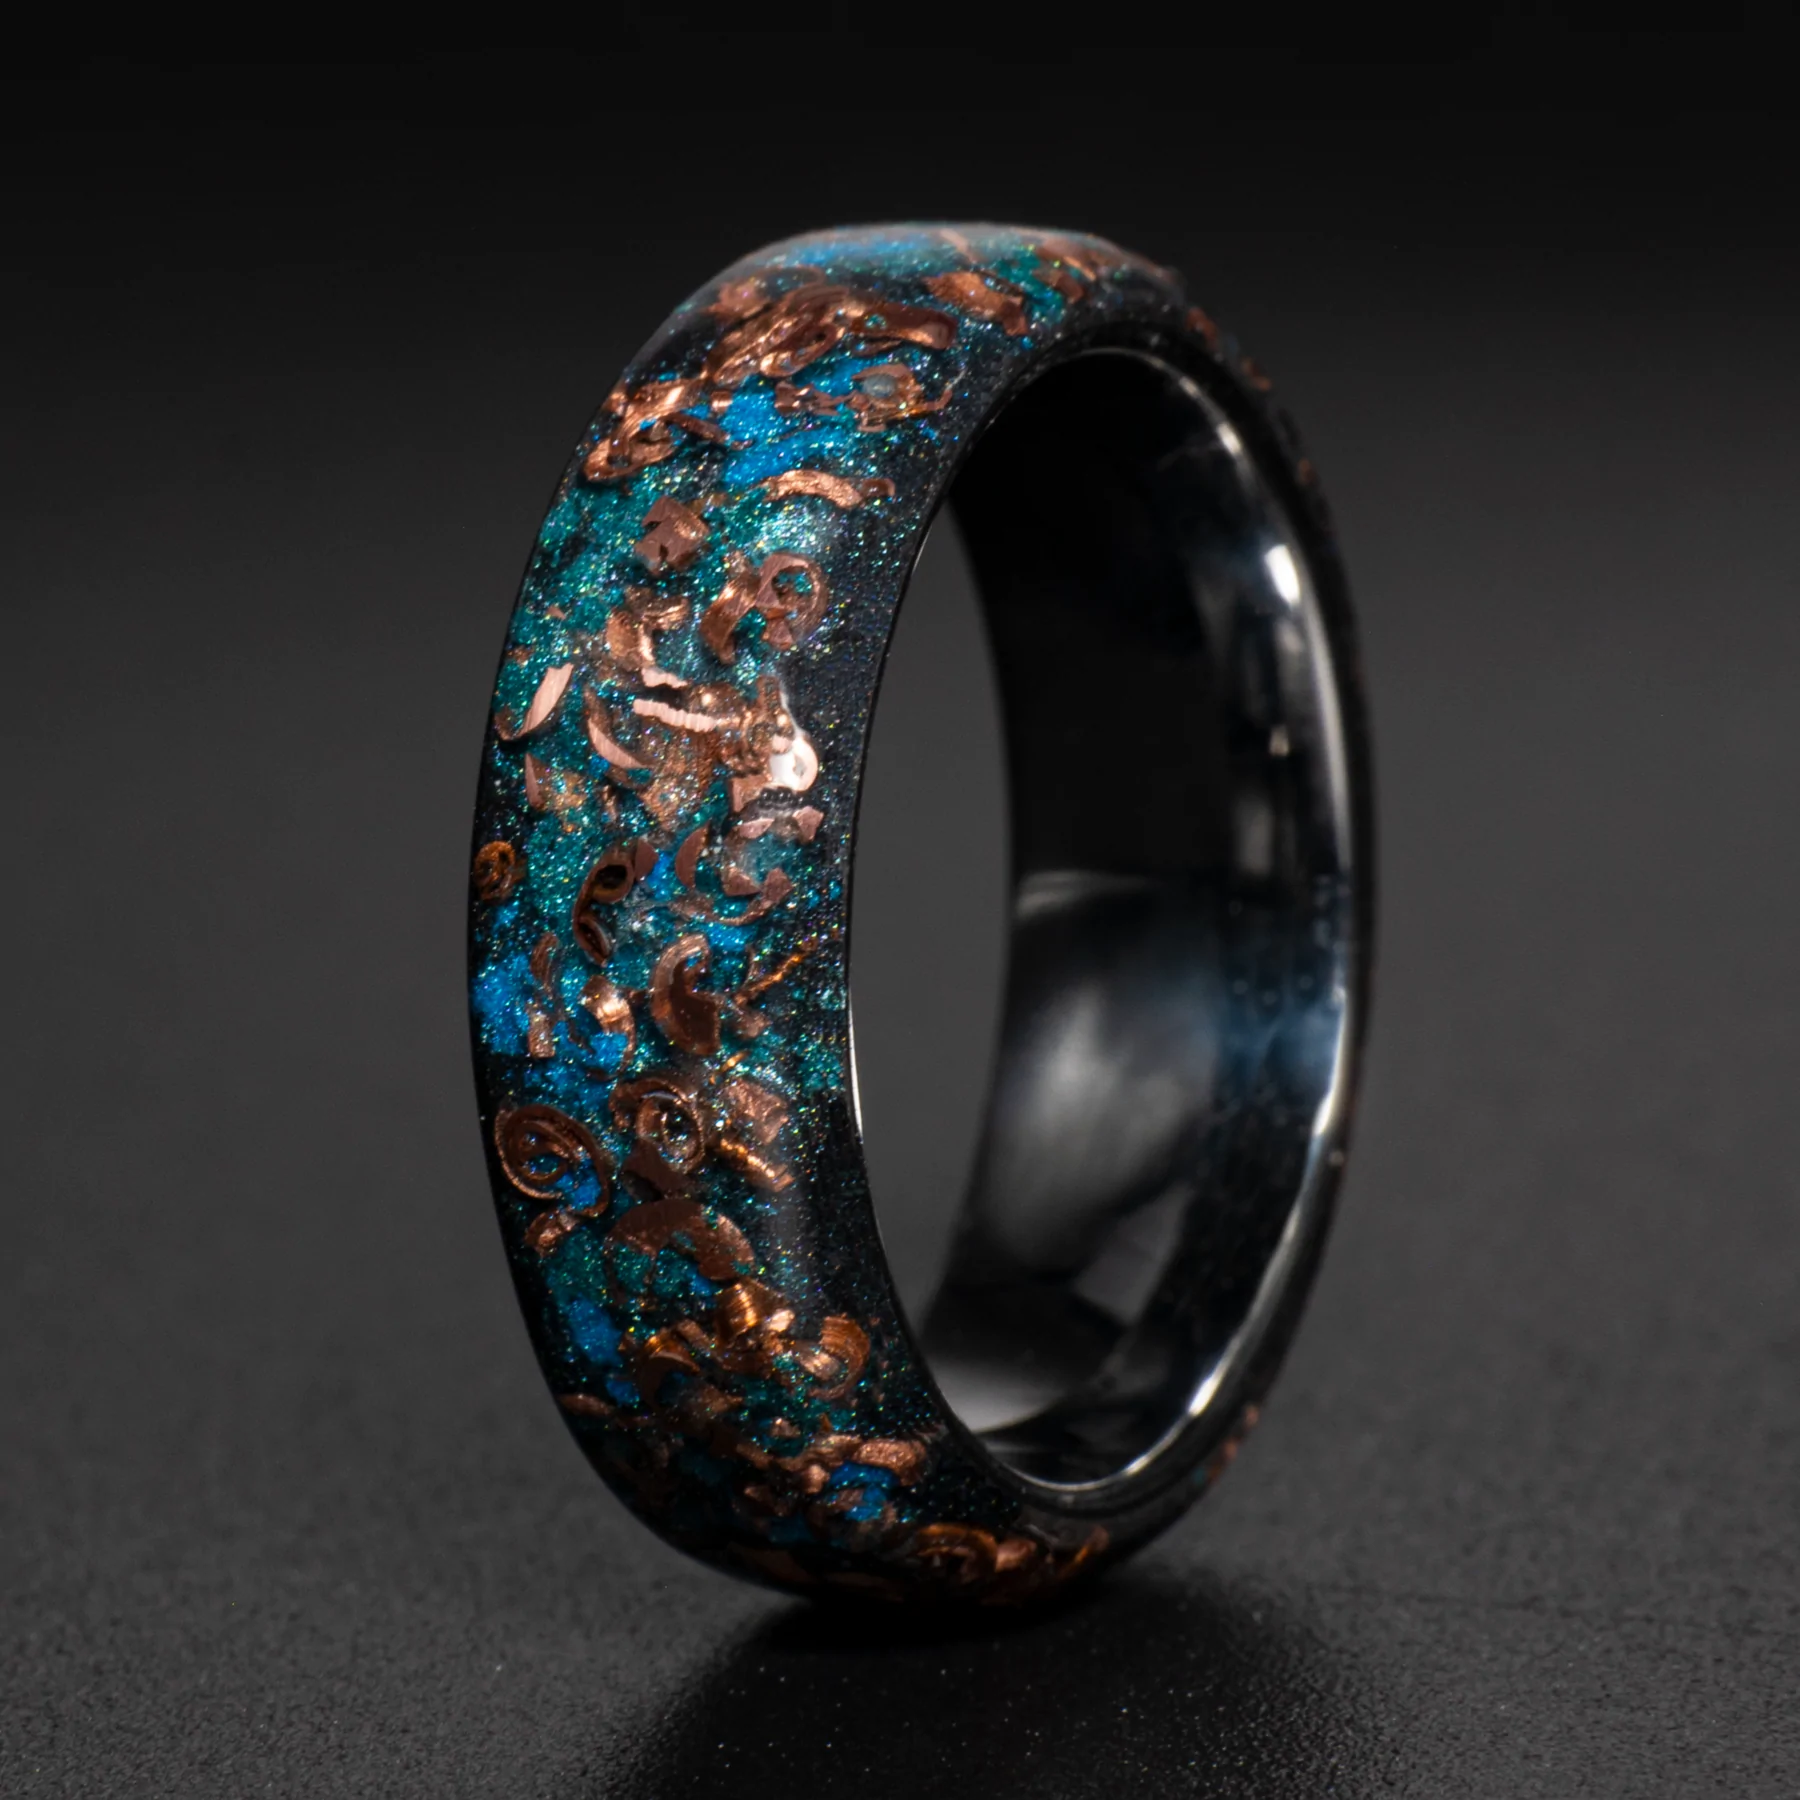 Patrick Adair Designs Custom Ring